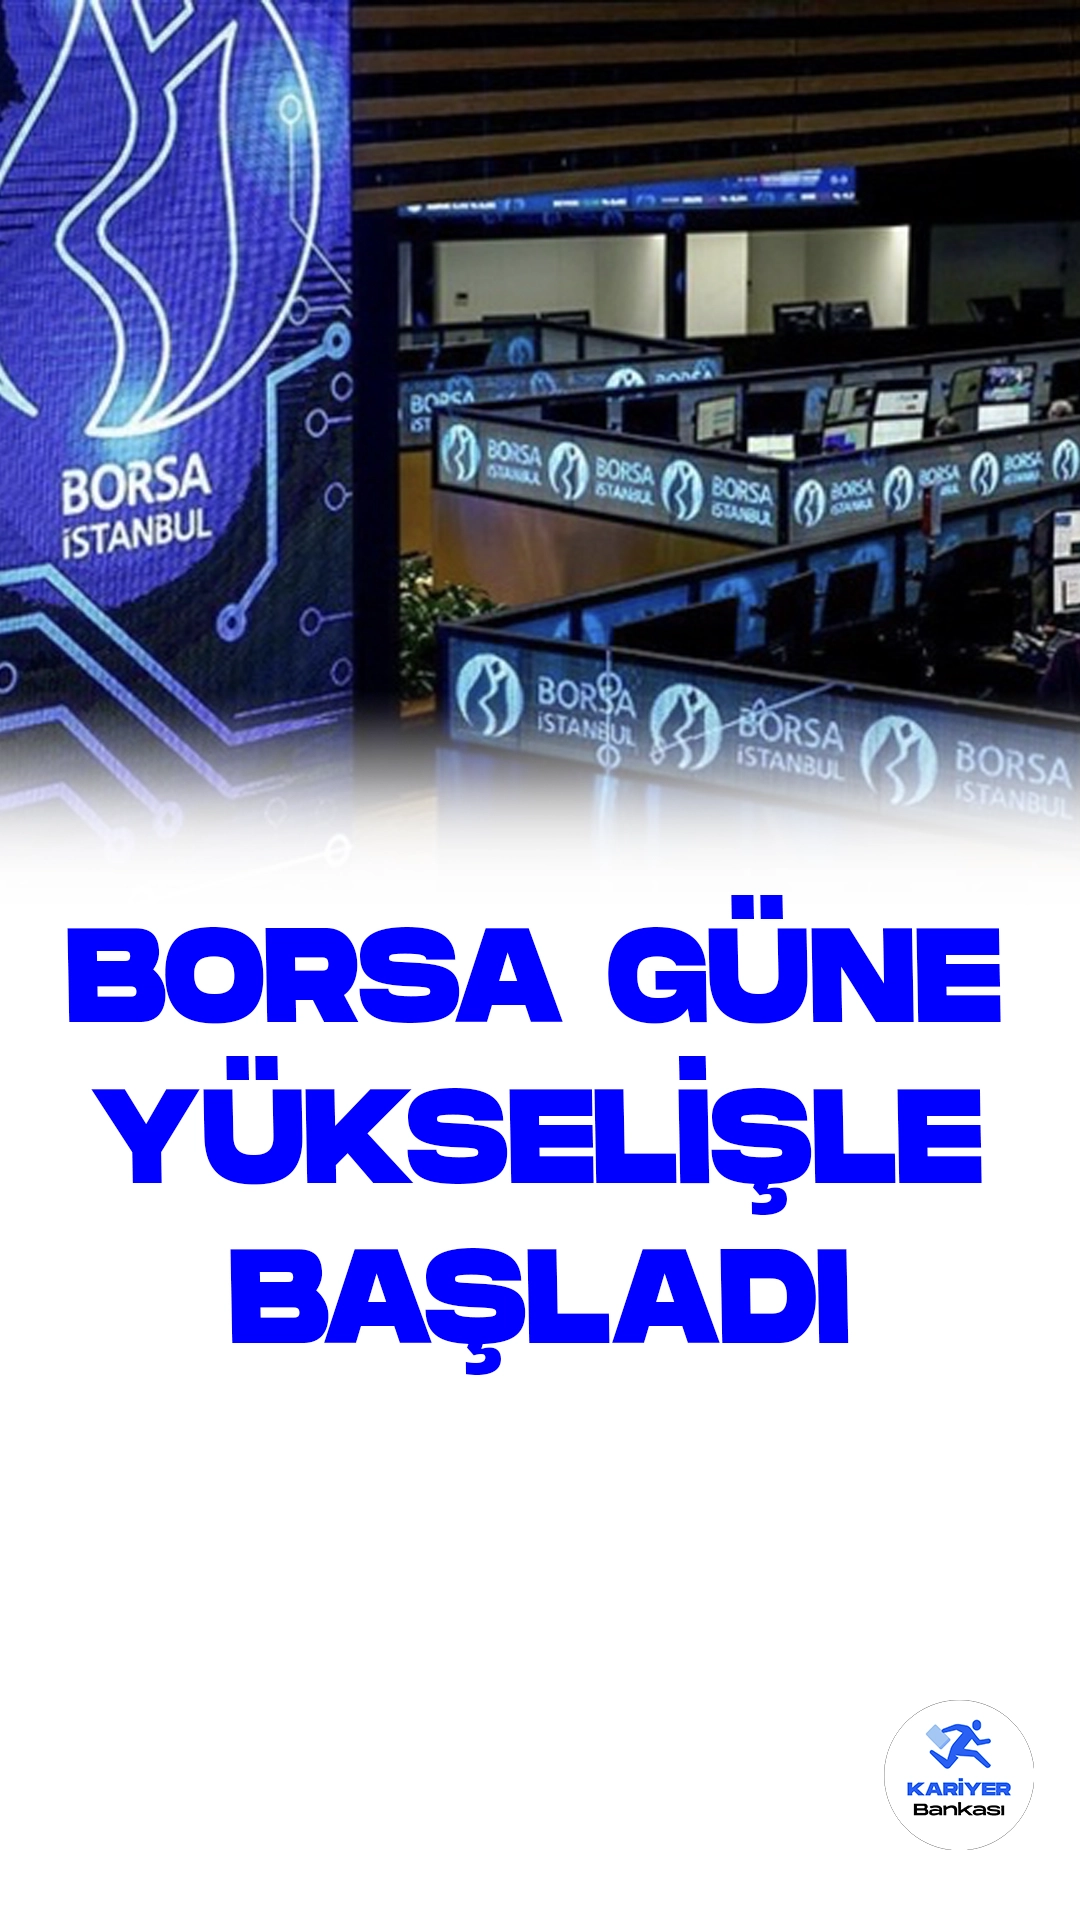 Borsa İstanbul'da BIST 100 Endeksi, Güne Yükselişle Başladı.Borsa İstanbul'da günün başlangıcında BIST 100 endeksi, 7.991,94 puandan yüzde 0,06'lık bir artışla güne başladı.